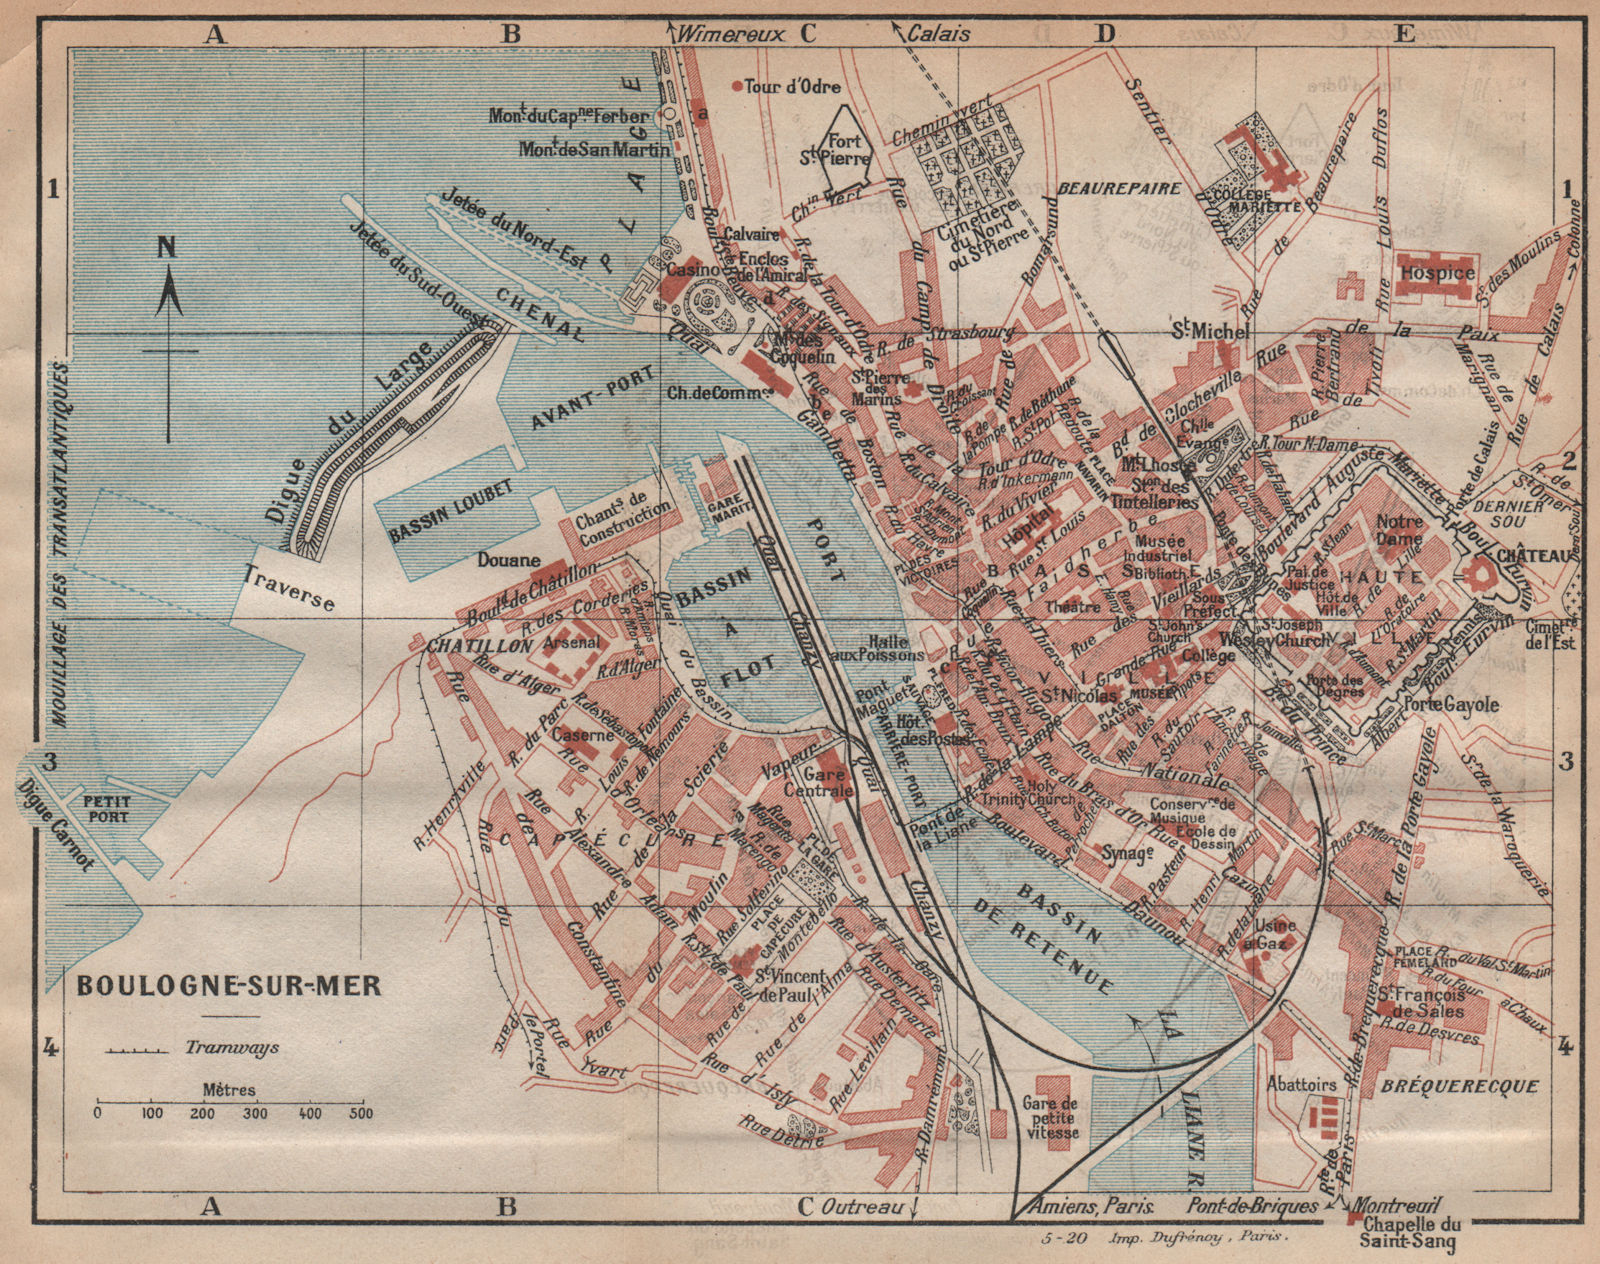 Associate Product BOULOGNE-SUR-MER. Vintage town city map plan. Pas-de-Calais 1920 old